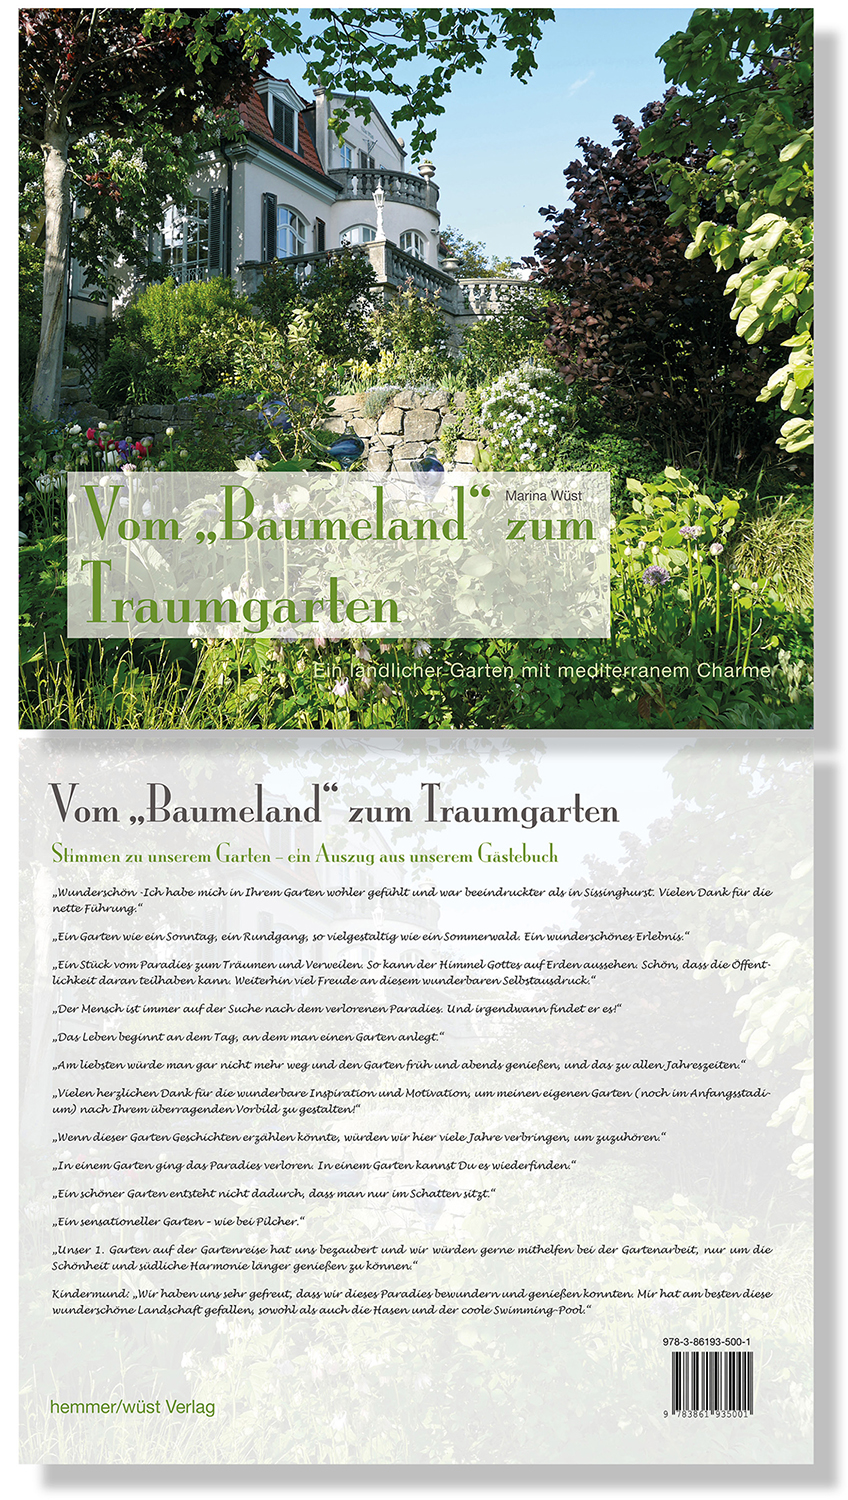 Vom "Baumeland" zum Traumgarten - Ein ländlicher Garten mit mediterranem Charme